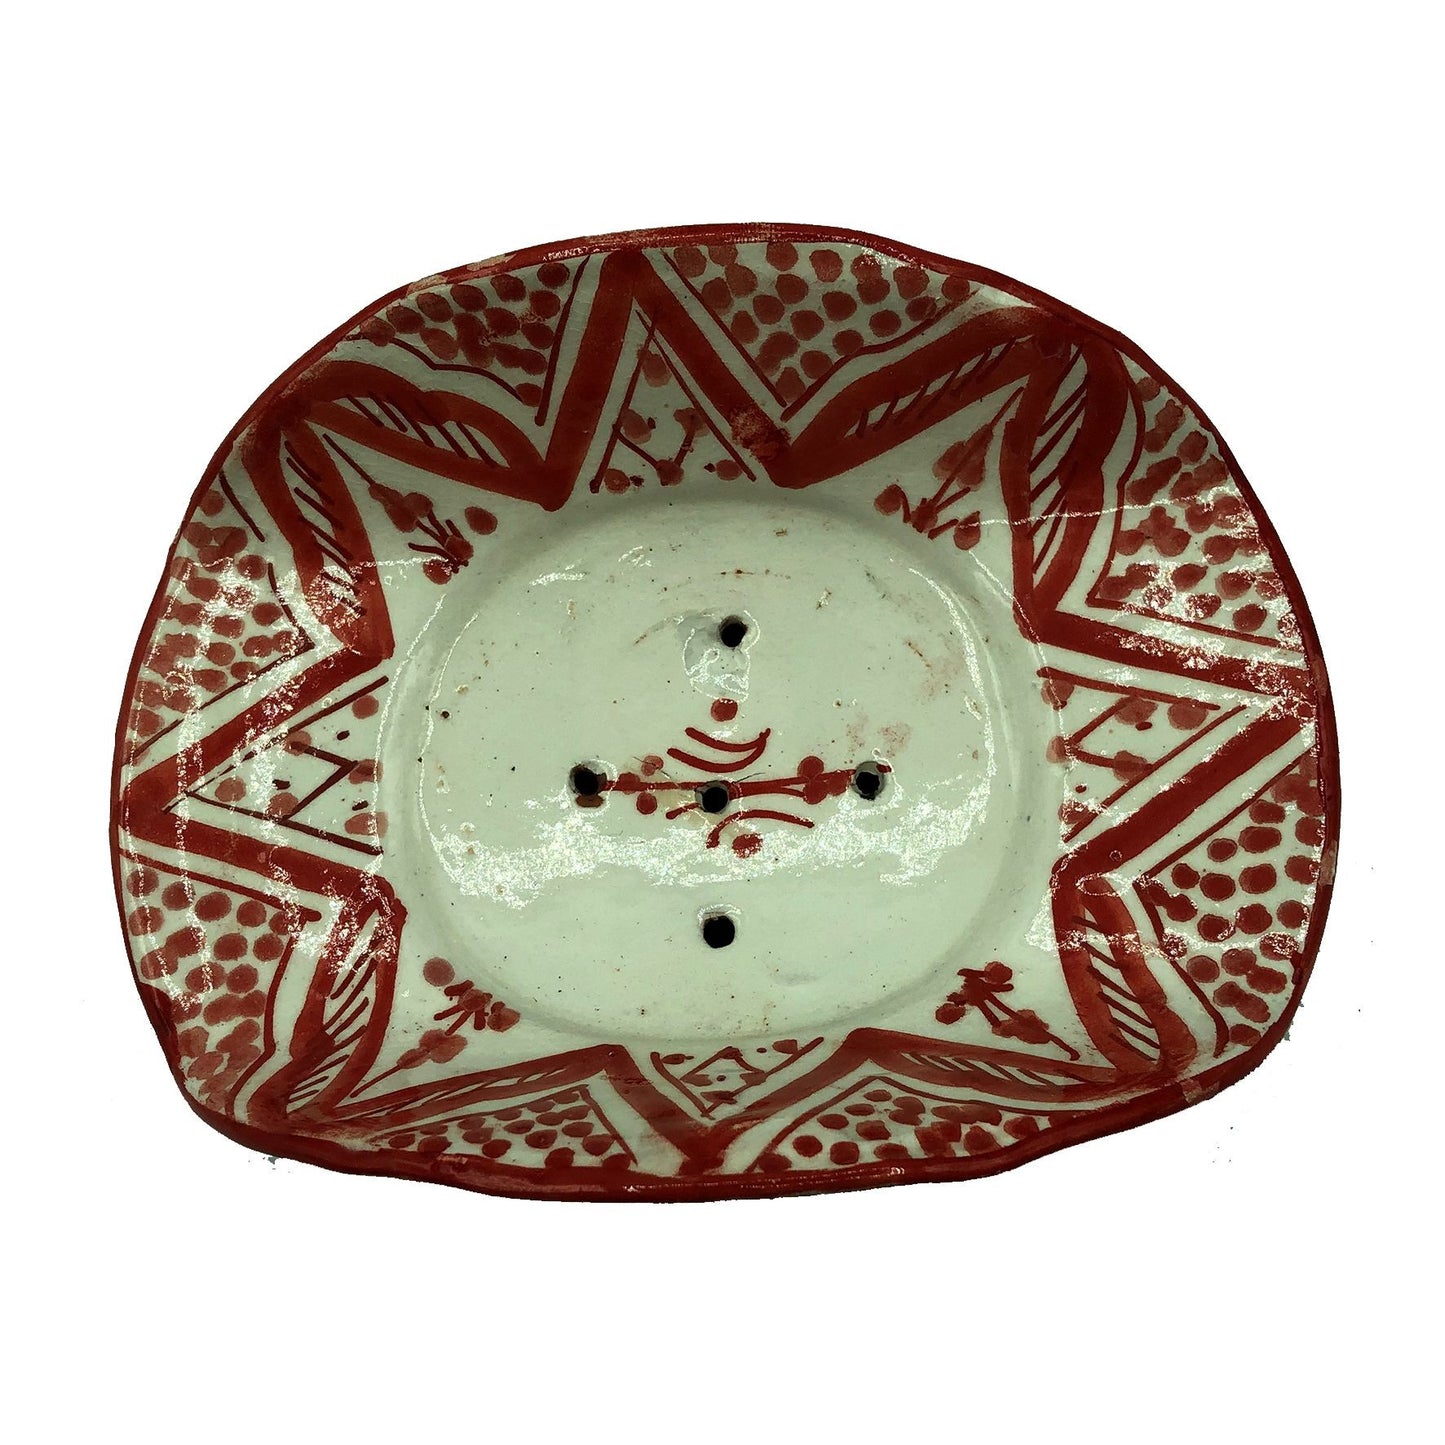 Arredamento Etnico Porta Sapone Ceramica Terre Cuite Artigiano Marocco 1904211004